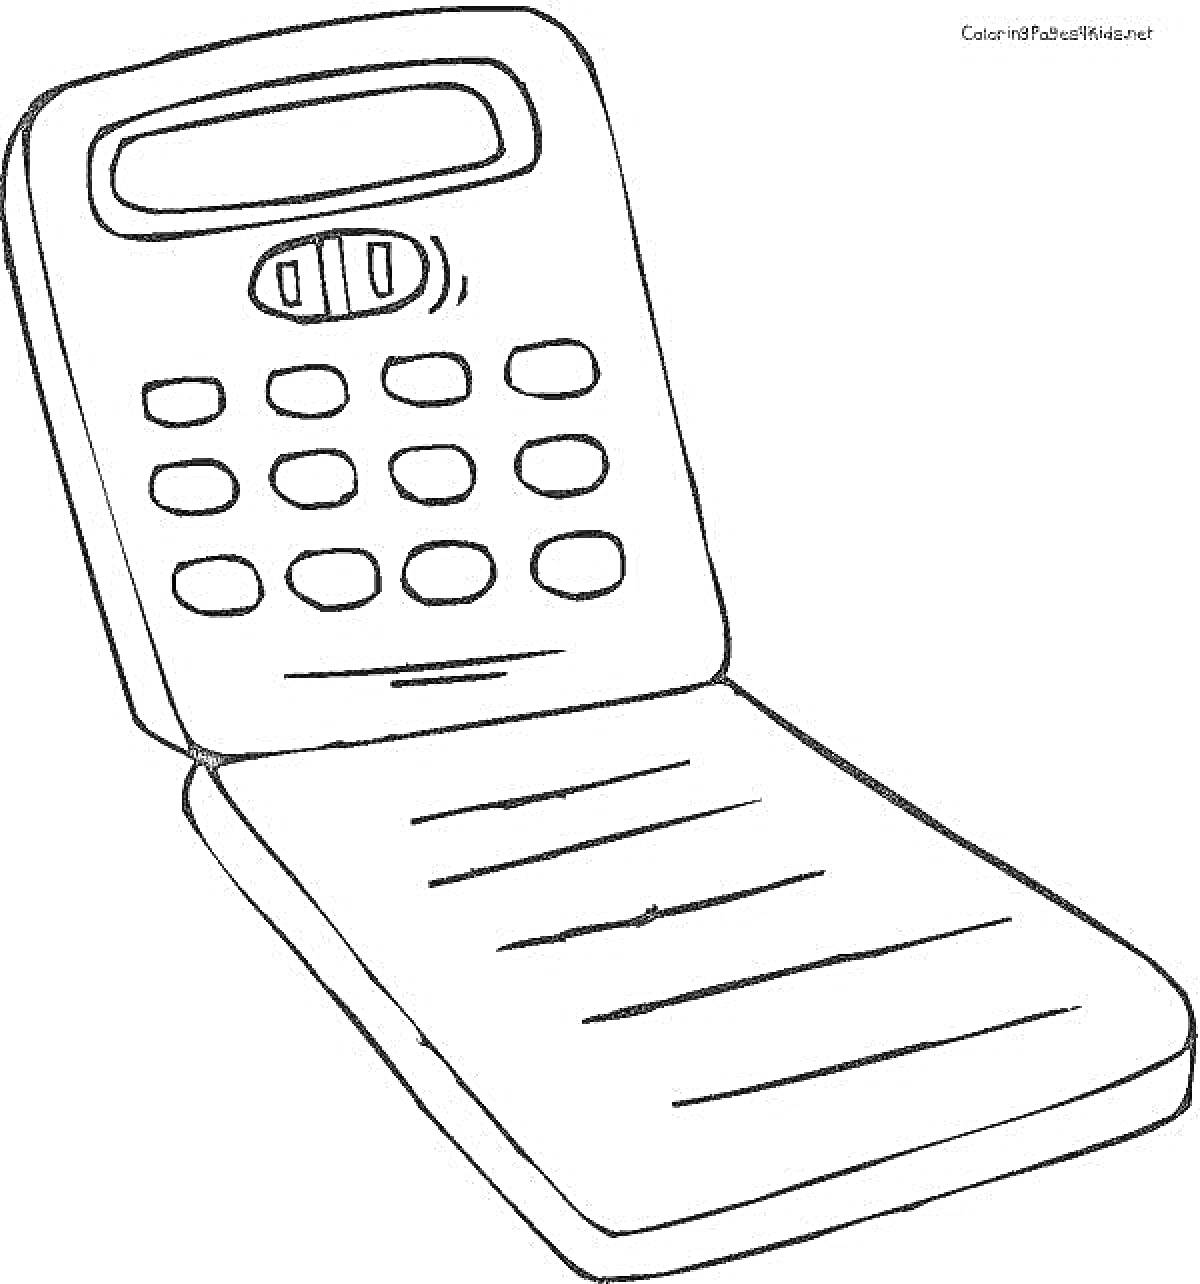 Раскраска калькулятор с кнопками и экраном в виде блокнота